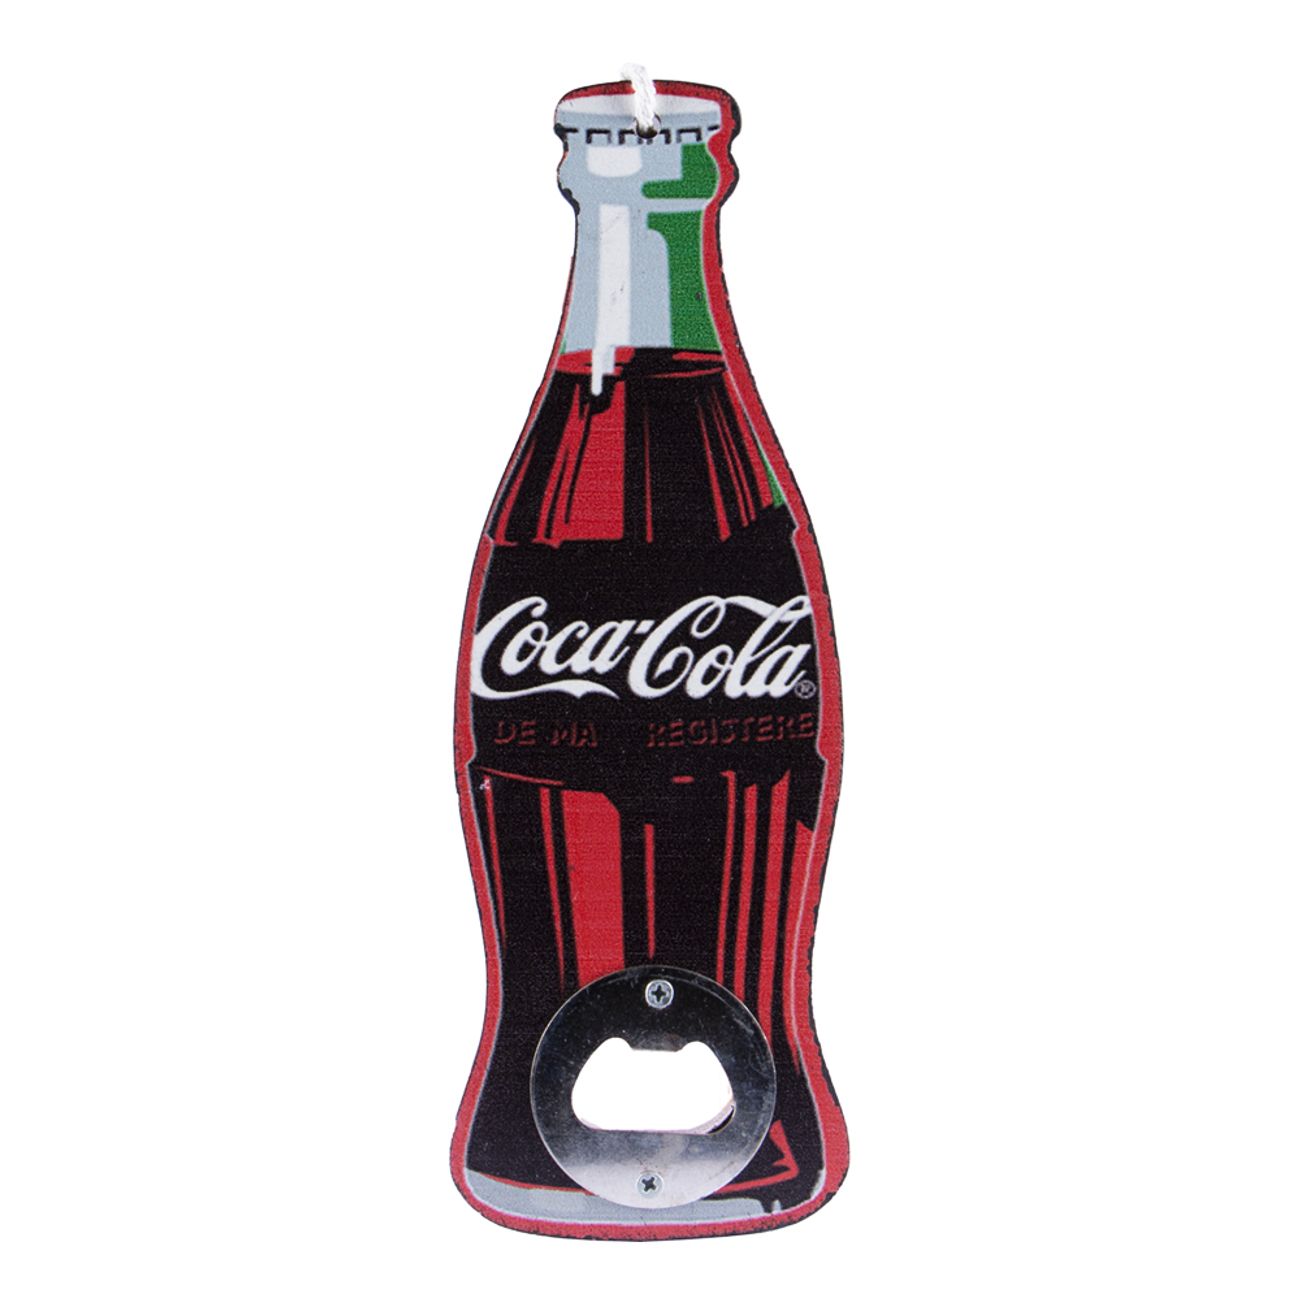 flaskoppnare-coca-cola2-1